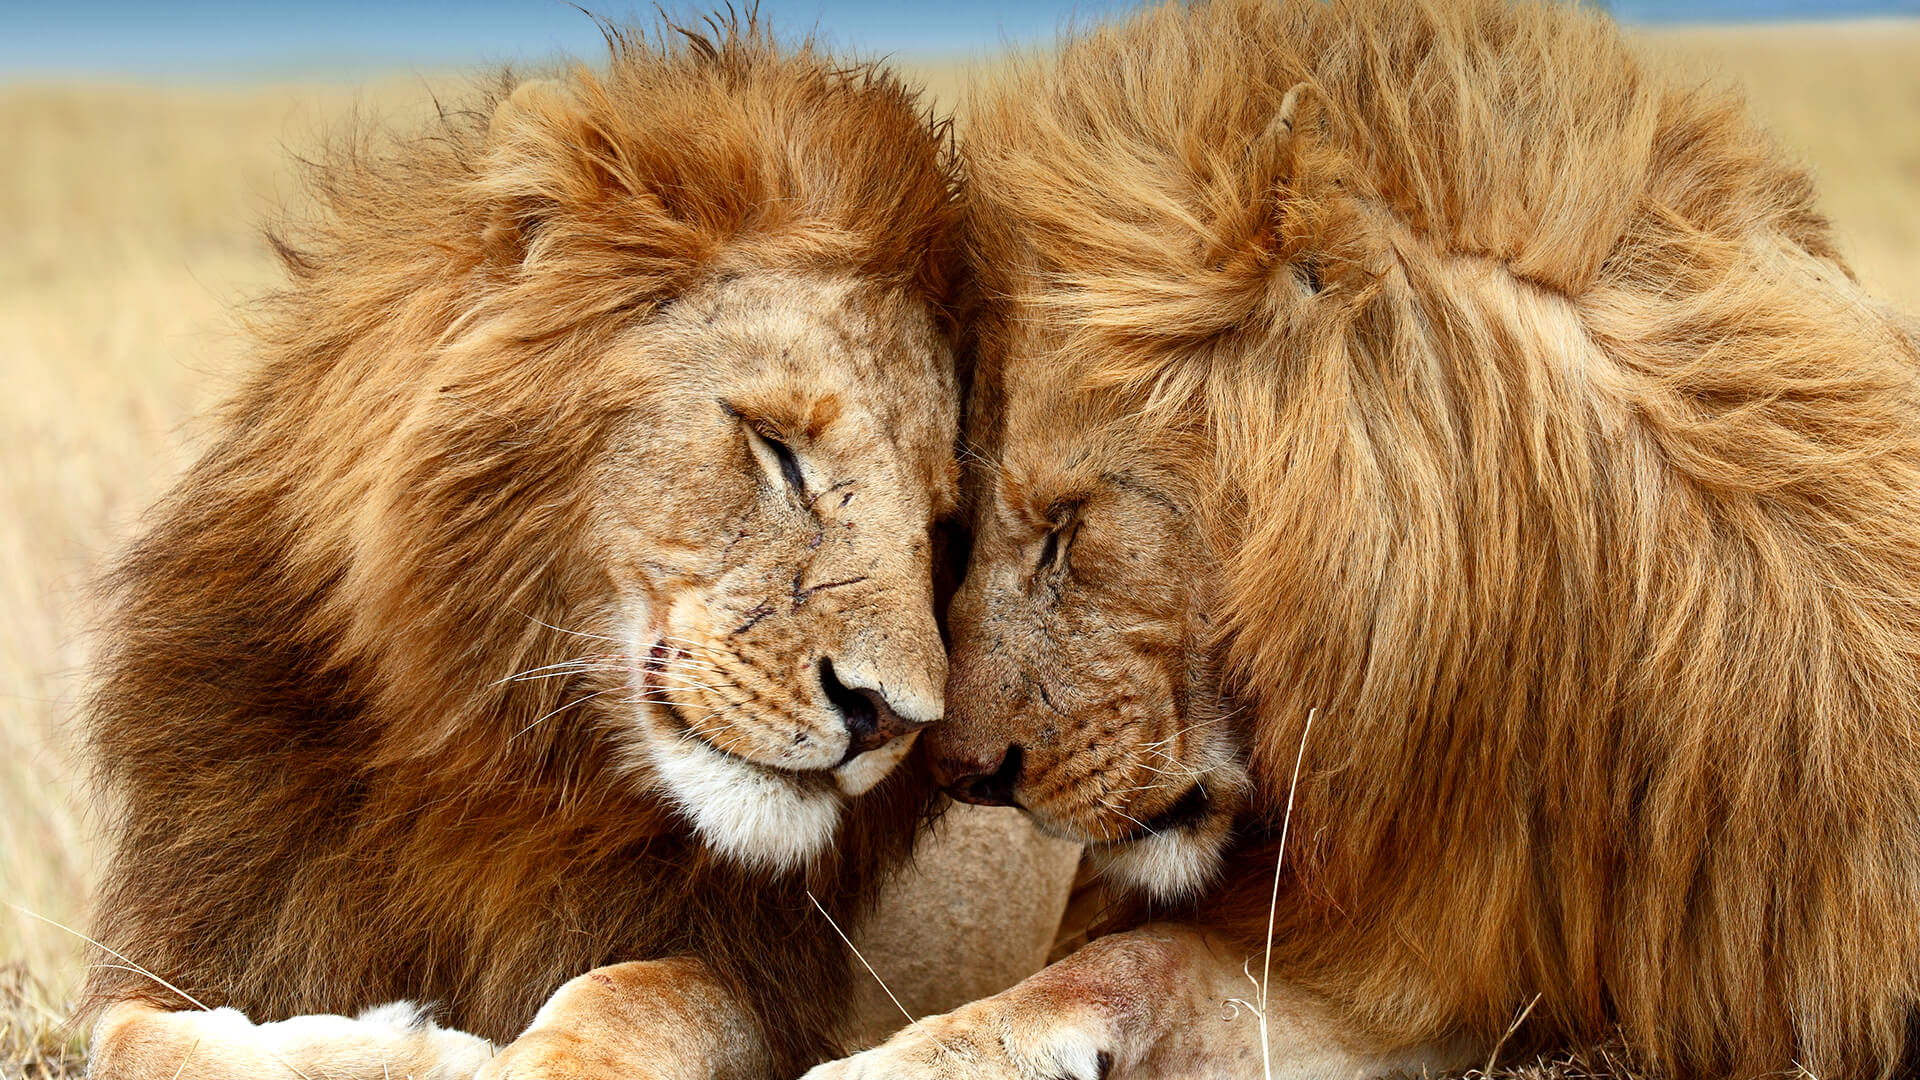 animals_hero_lions_0.jpg